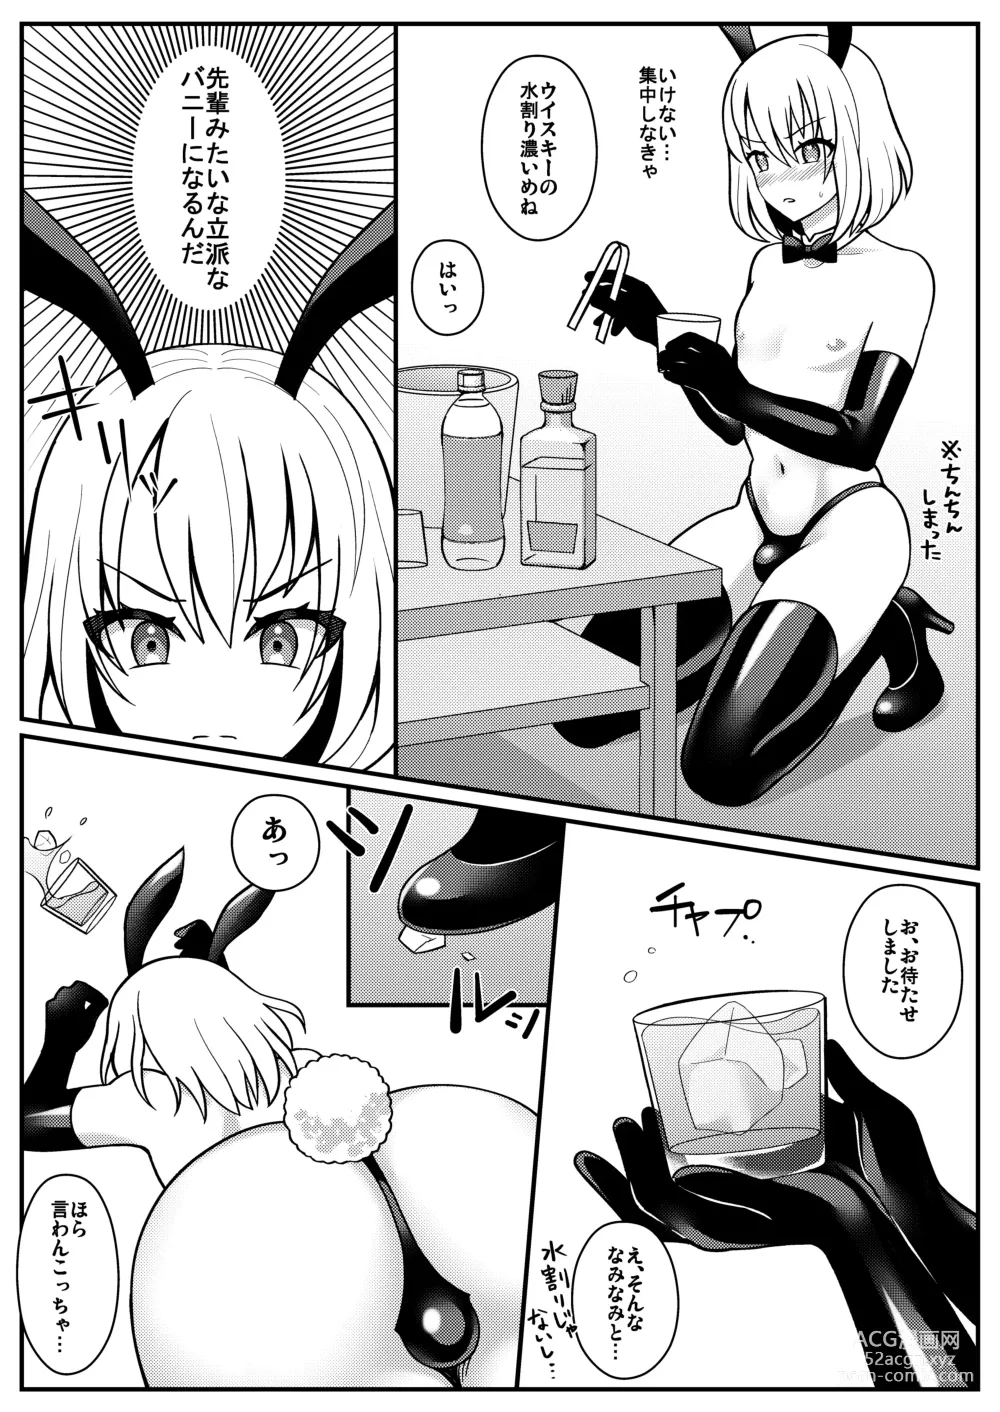 Page 6 of doujinshi Bunny-kun Shugyouchuu!